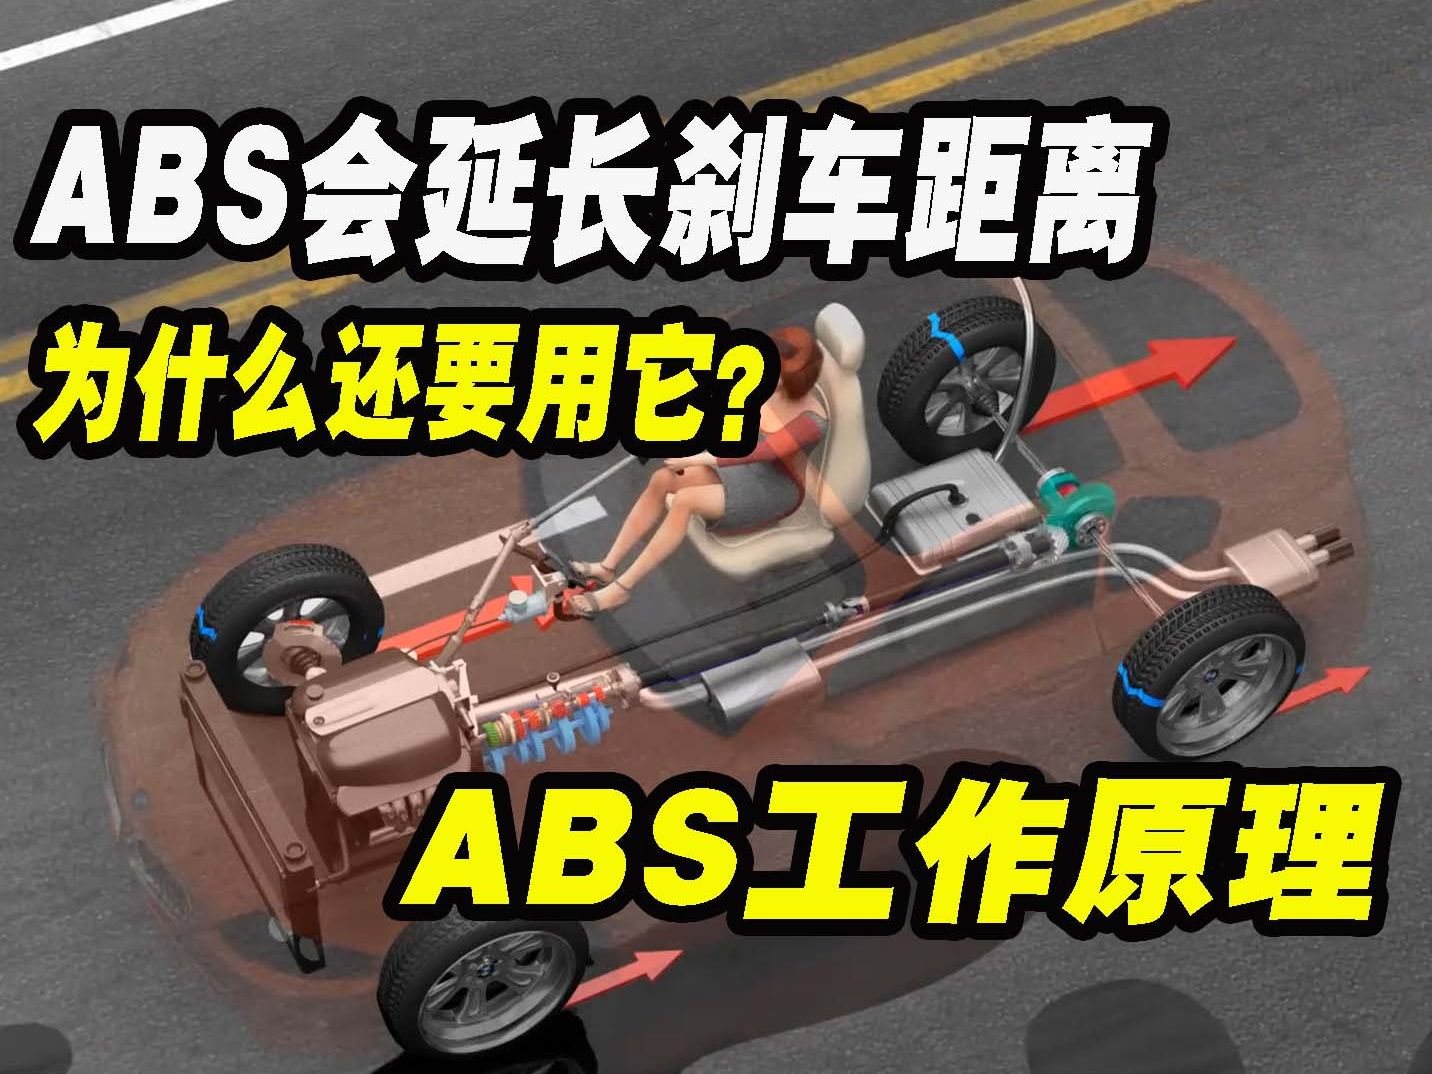 ABS明明会延长刹车距离，为什么还要使用它？一分钟了解ABS防抱死系统的工作原理!